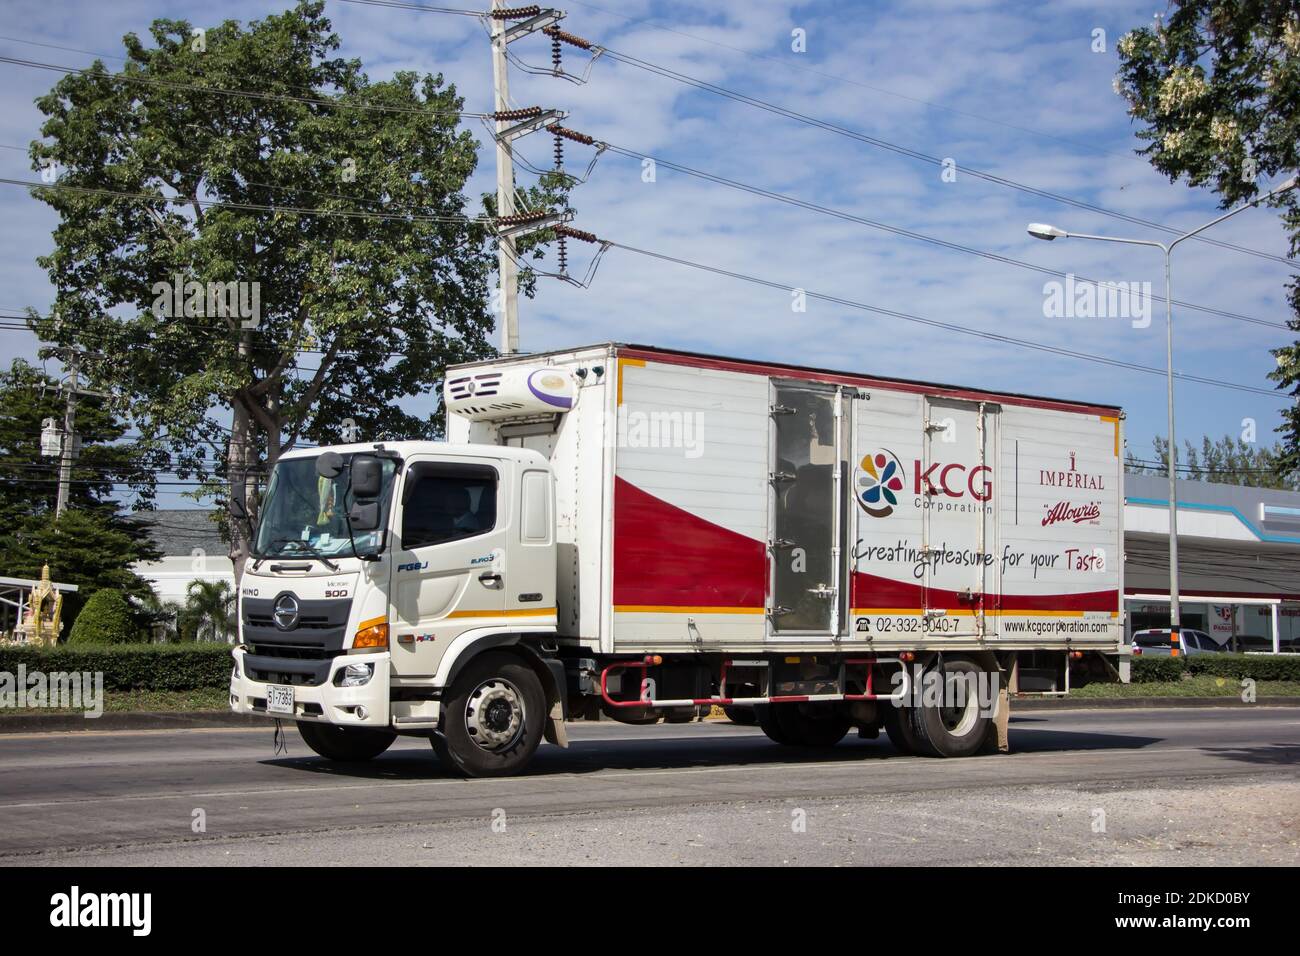 Chiangmai, Thaïlande - novembre 13 2020 : camion à conteneurs du Groupe KCG Kim Chua. Photo sur la route n°1001 à environ 8 km du centre ville, thaïlande. Banque D'Images